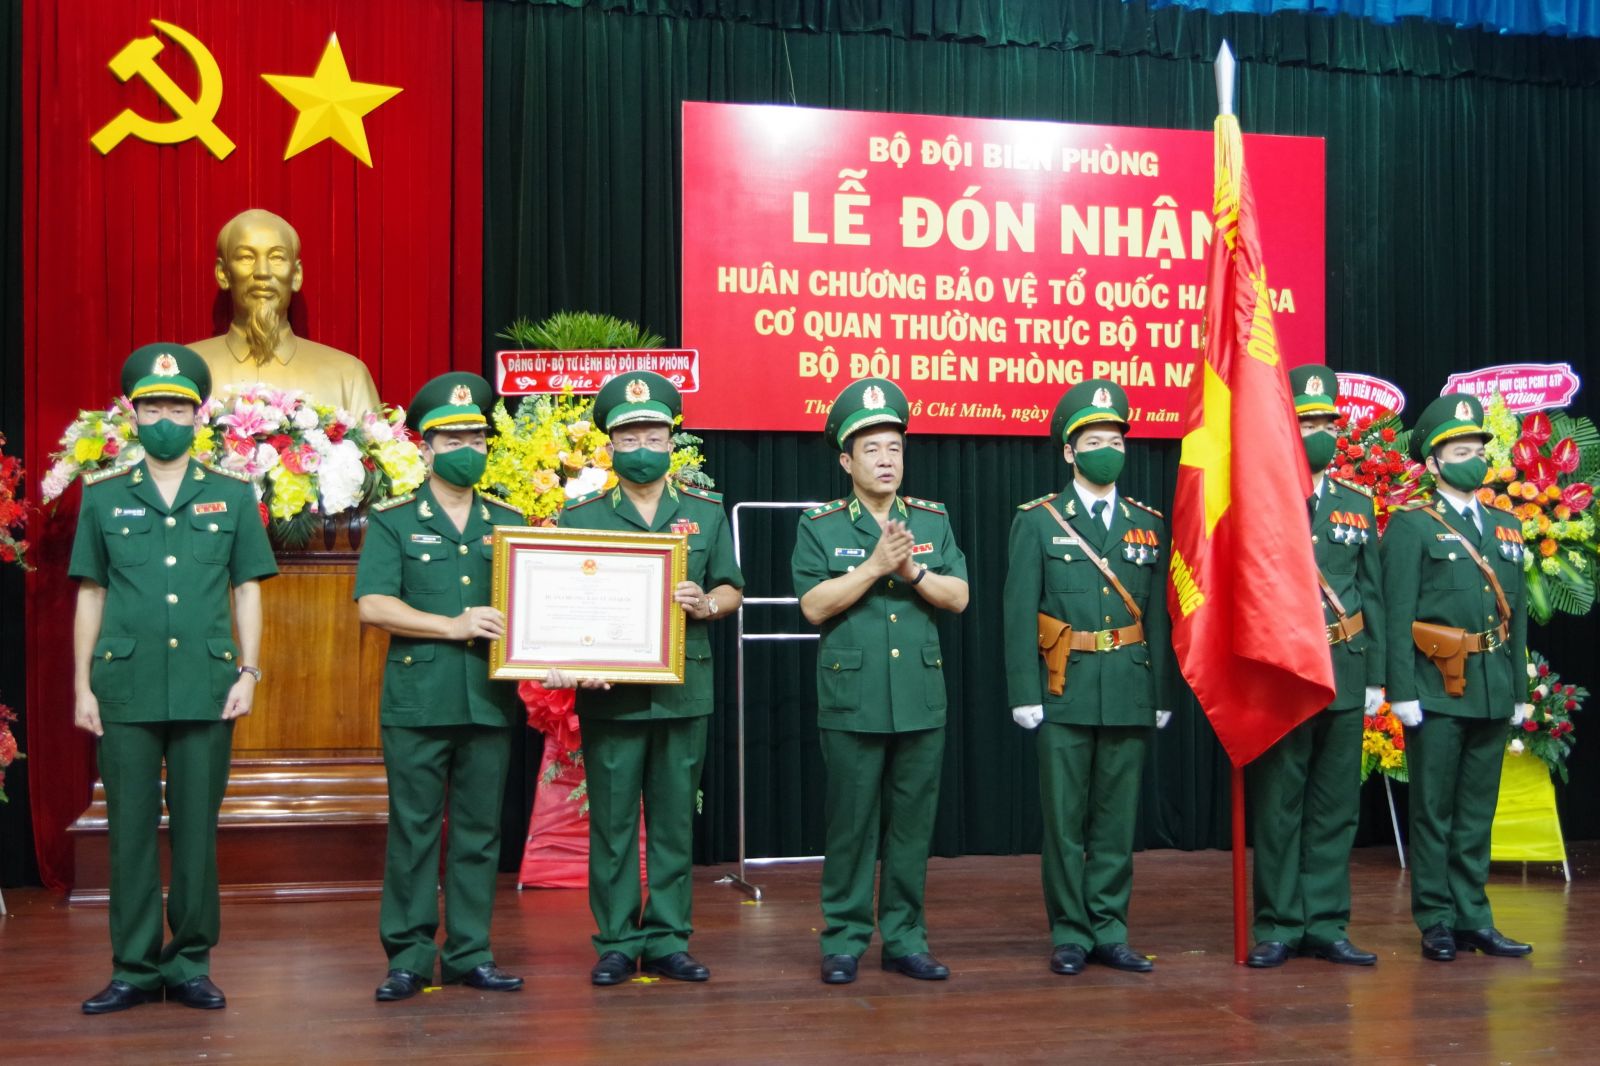 Hình ảnh: Cơ quan Thường trực Bộ Tư lệnh Bộ đội Biên phòng đón nhận Huân chương Bảo vệ Tổ quốc hạng 3 số 3